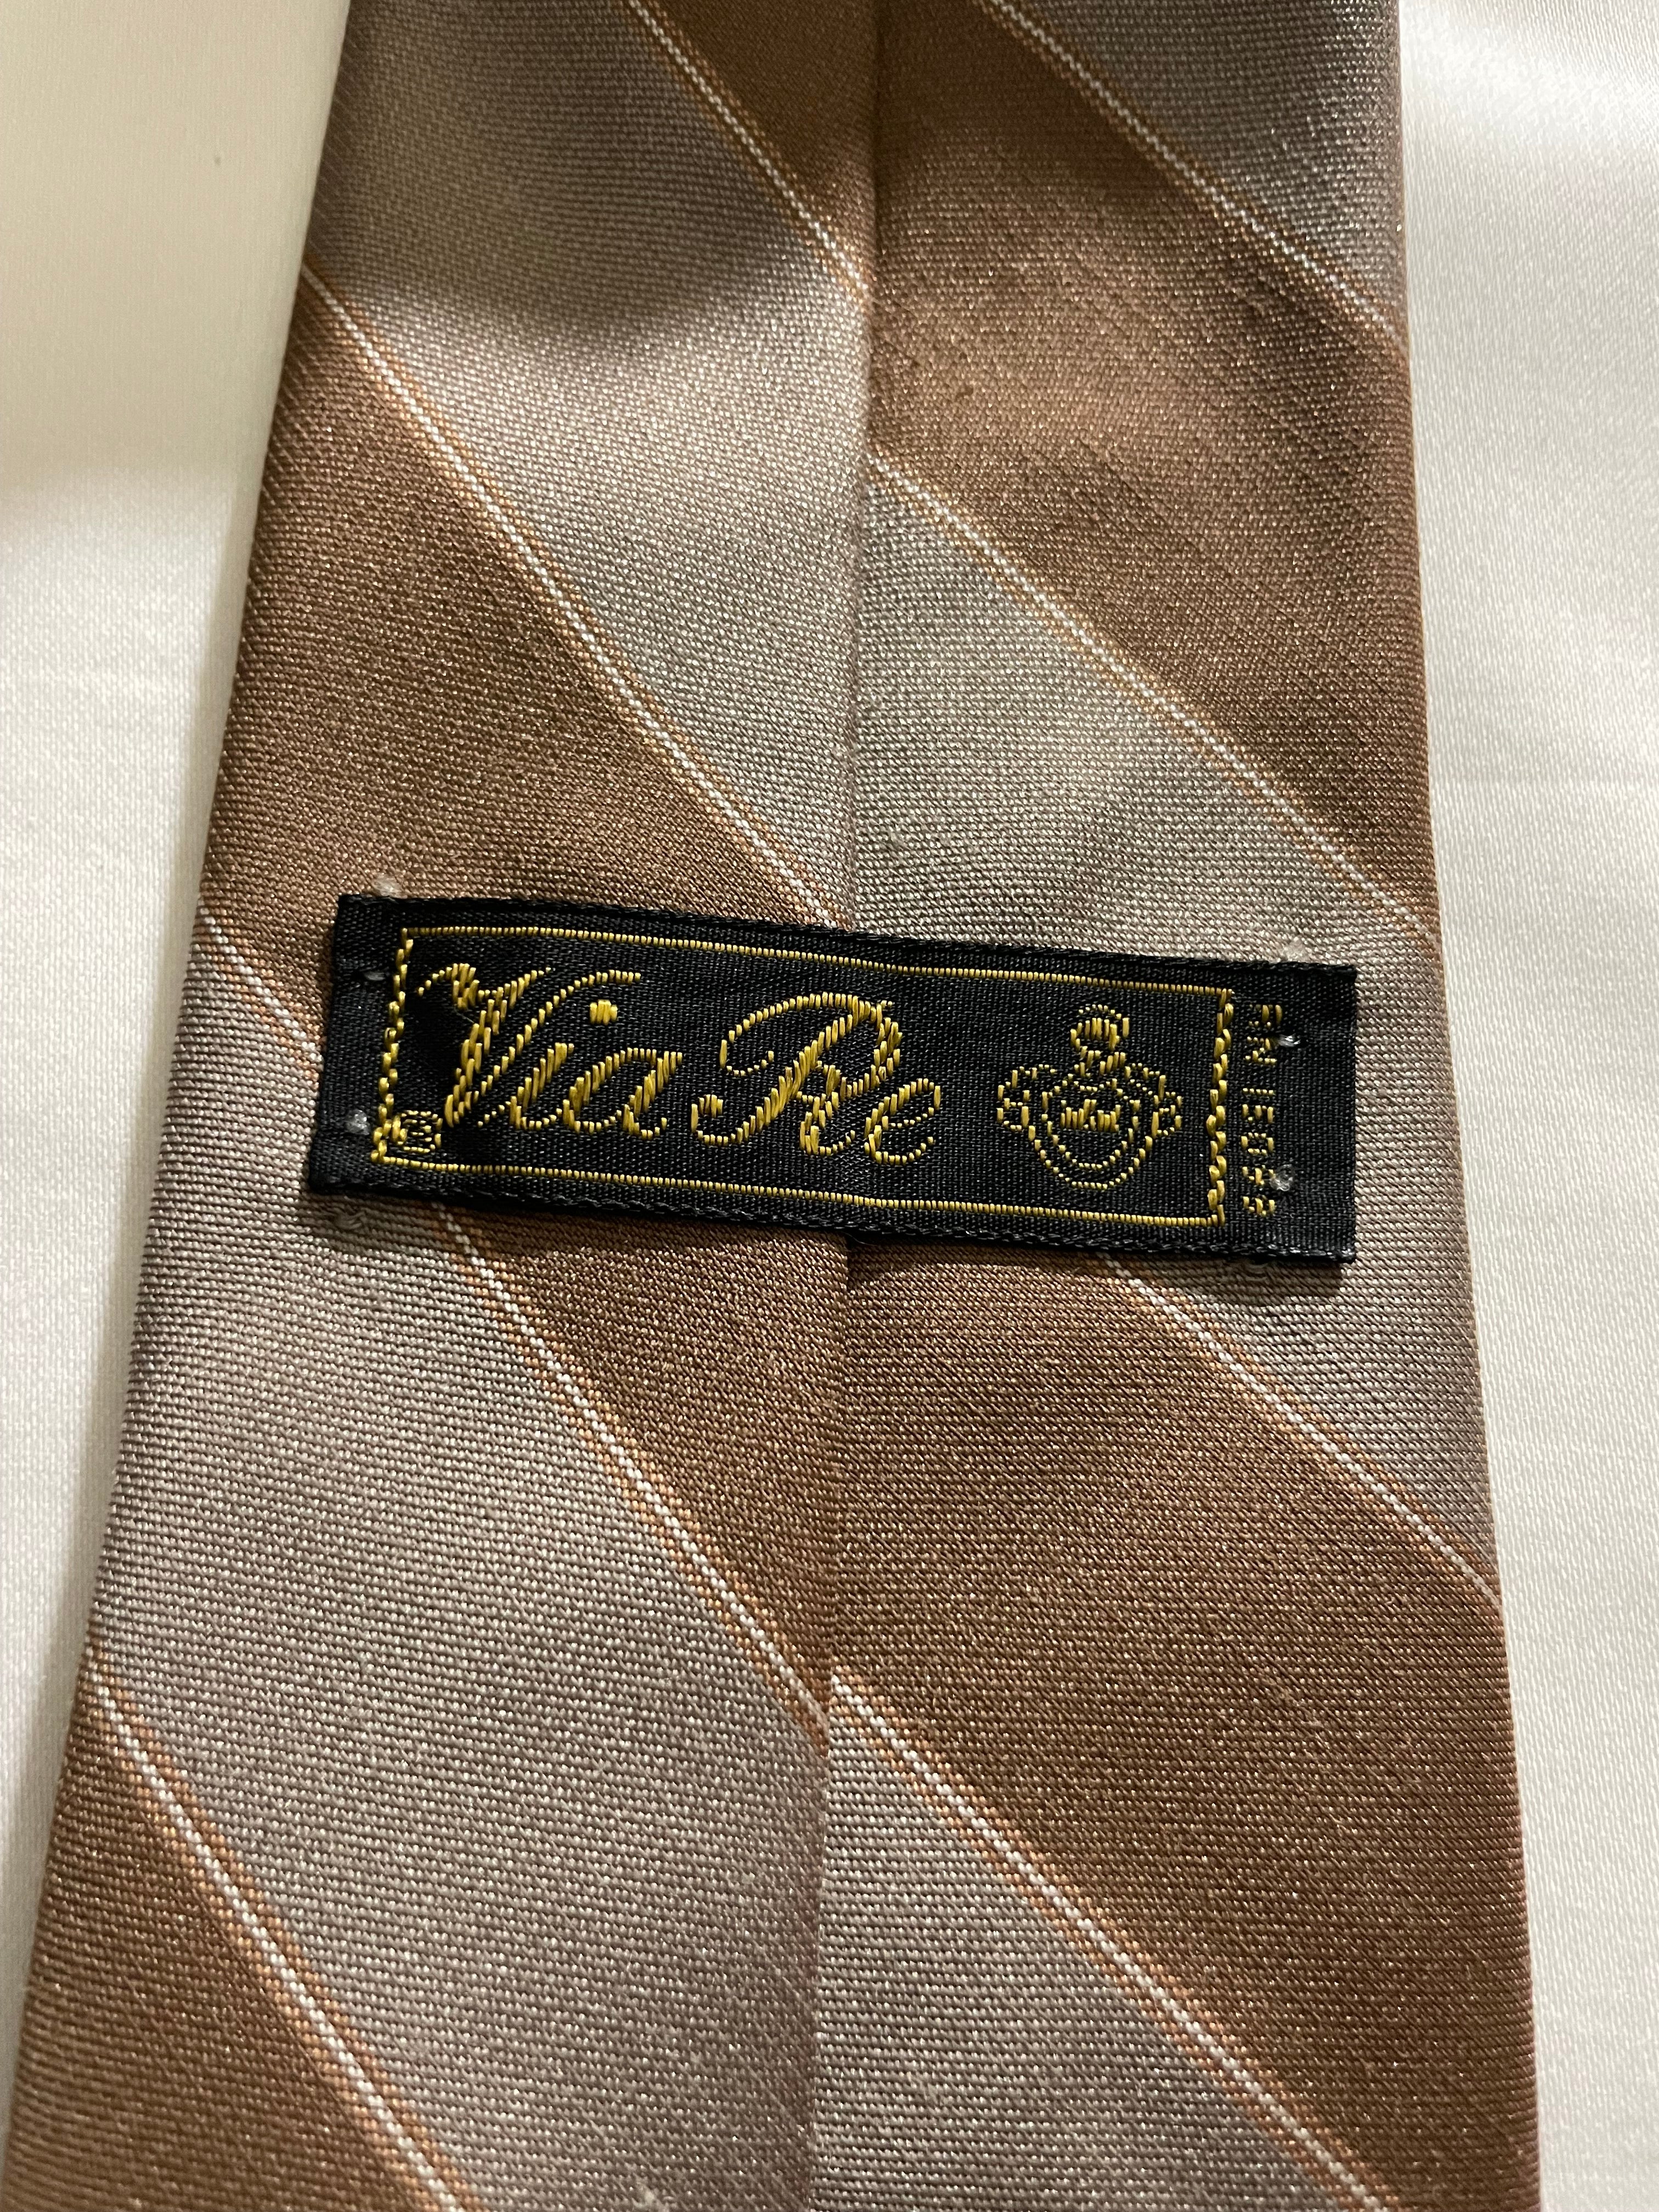 Vintage Via Re Tan Striped Tie